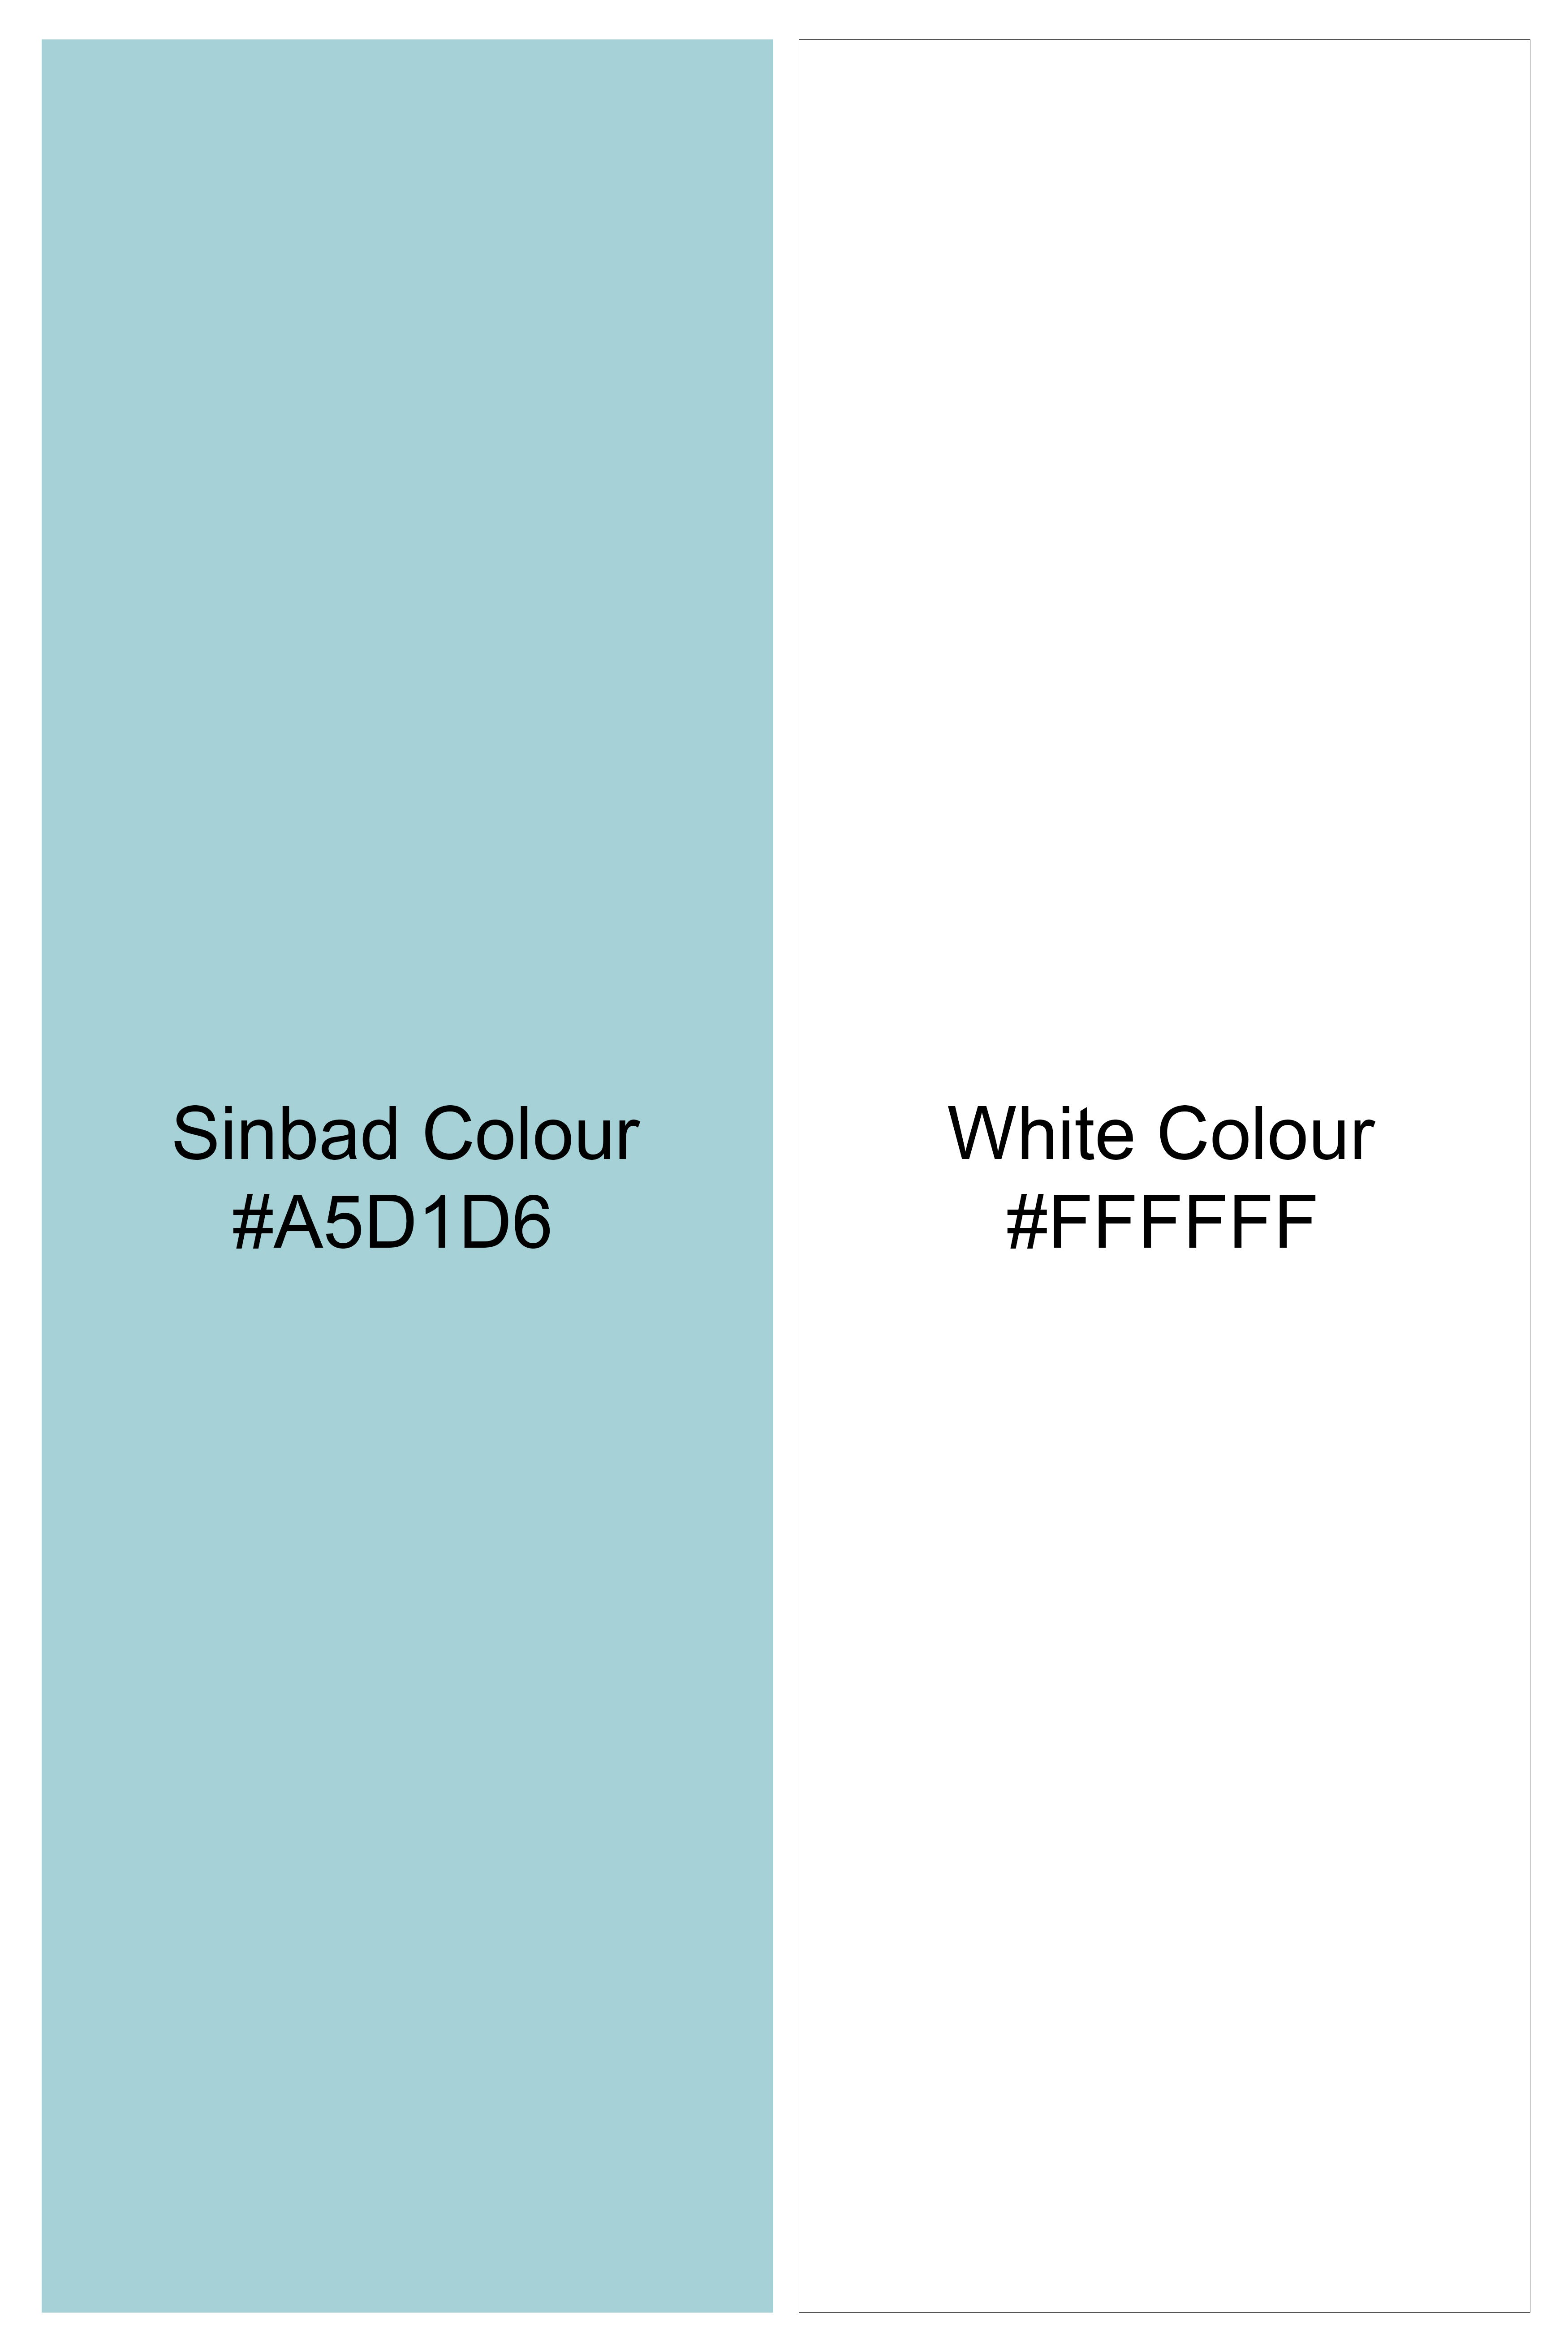 Sinbad Blue and White Printed Subtle Sheen Super Soft Premium Cotton Shirt 11762-CA-38, 11762-CA-H-38, 11762-CA-39, 11762-CA-H-39, 11762-CA-40, 11762-CA-H-40, 11762-CA-42, 11762-CA-H-42, 11762-CA-44, 11762-CA-H-44, 11762-CA-46, 11762-CA-H-46, 11762-CA-48, 11762-CA-H-48, 11762-CA-50, 11762-CA-H-50, 11762-CA-52, 11762-CA-H-52